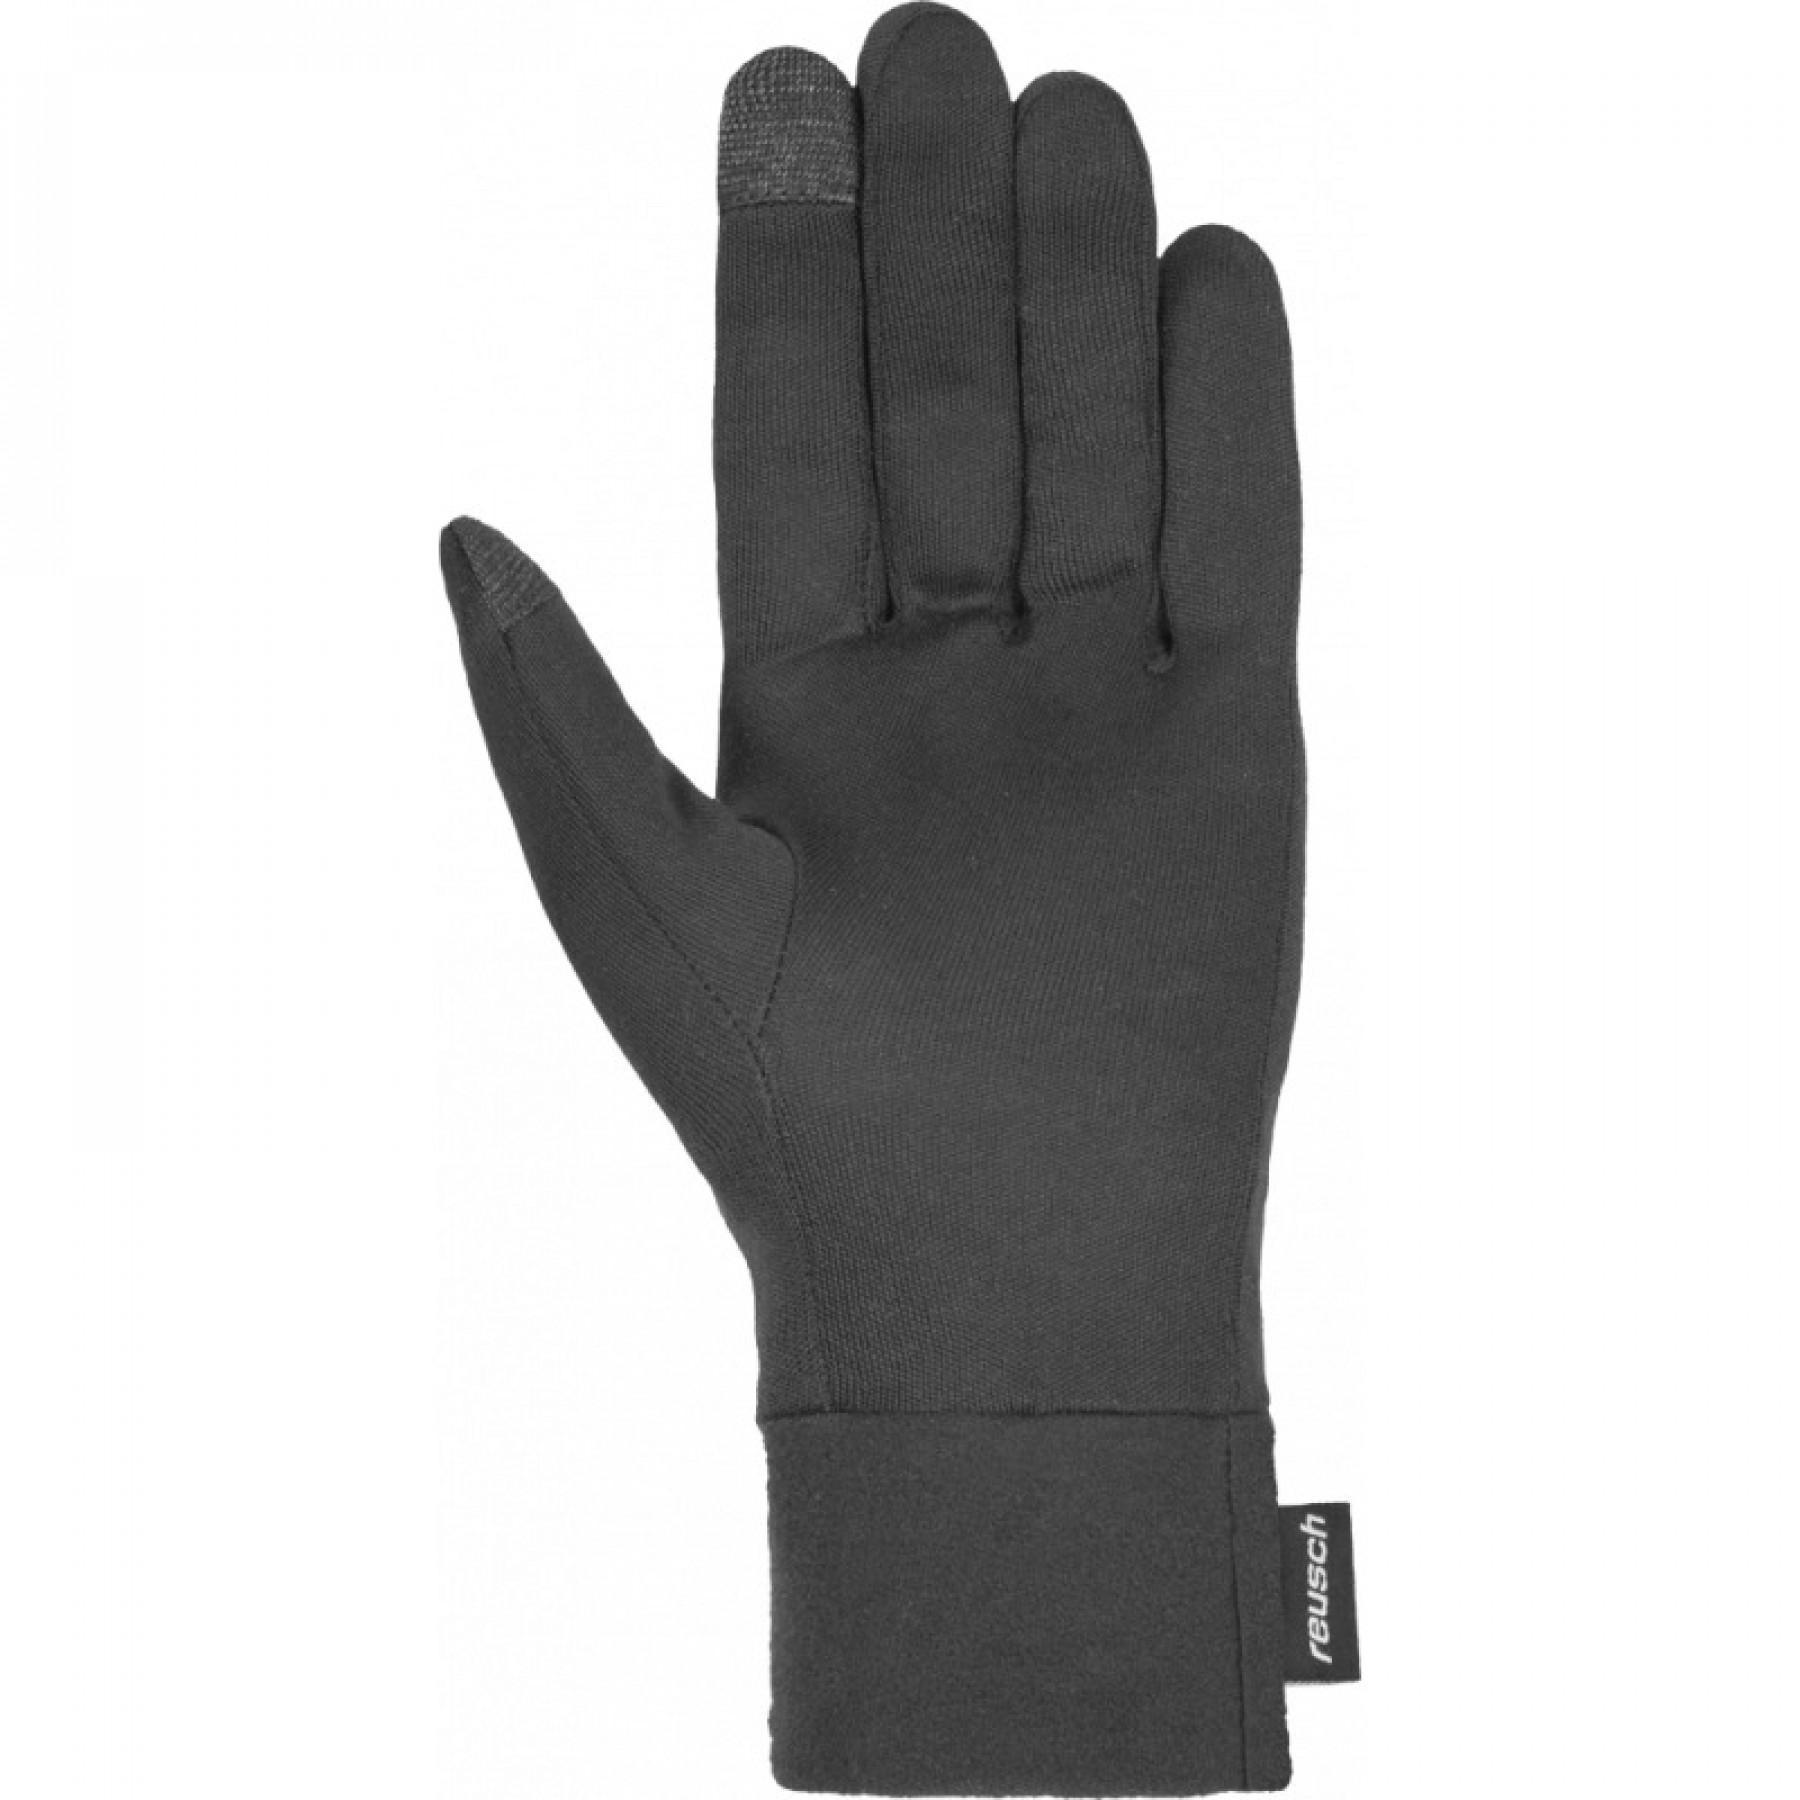 Gloves Reusch Silk Liner Touch-tec